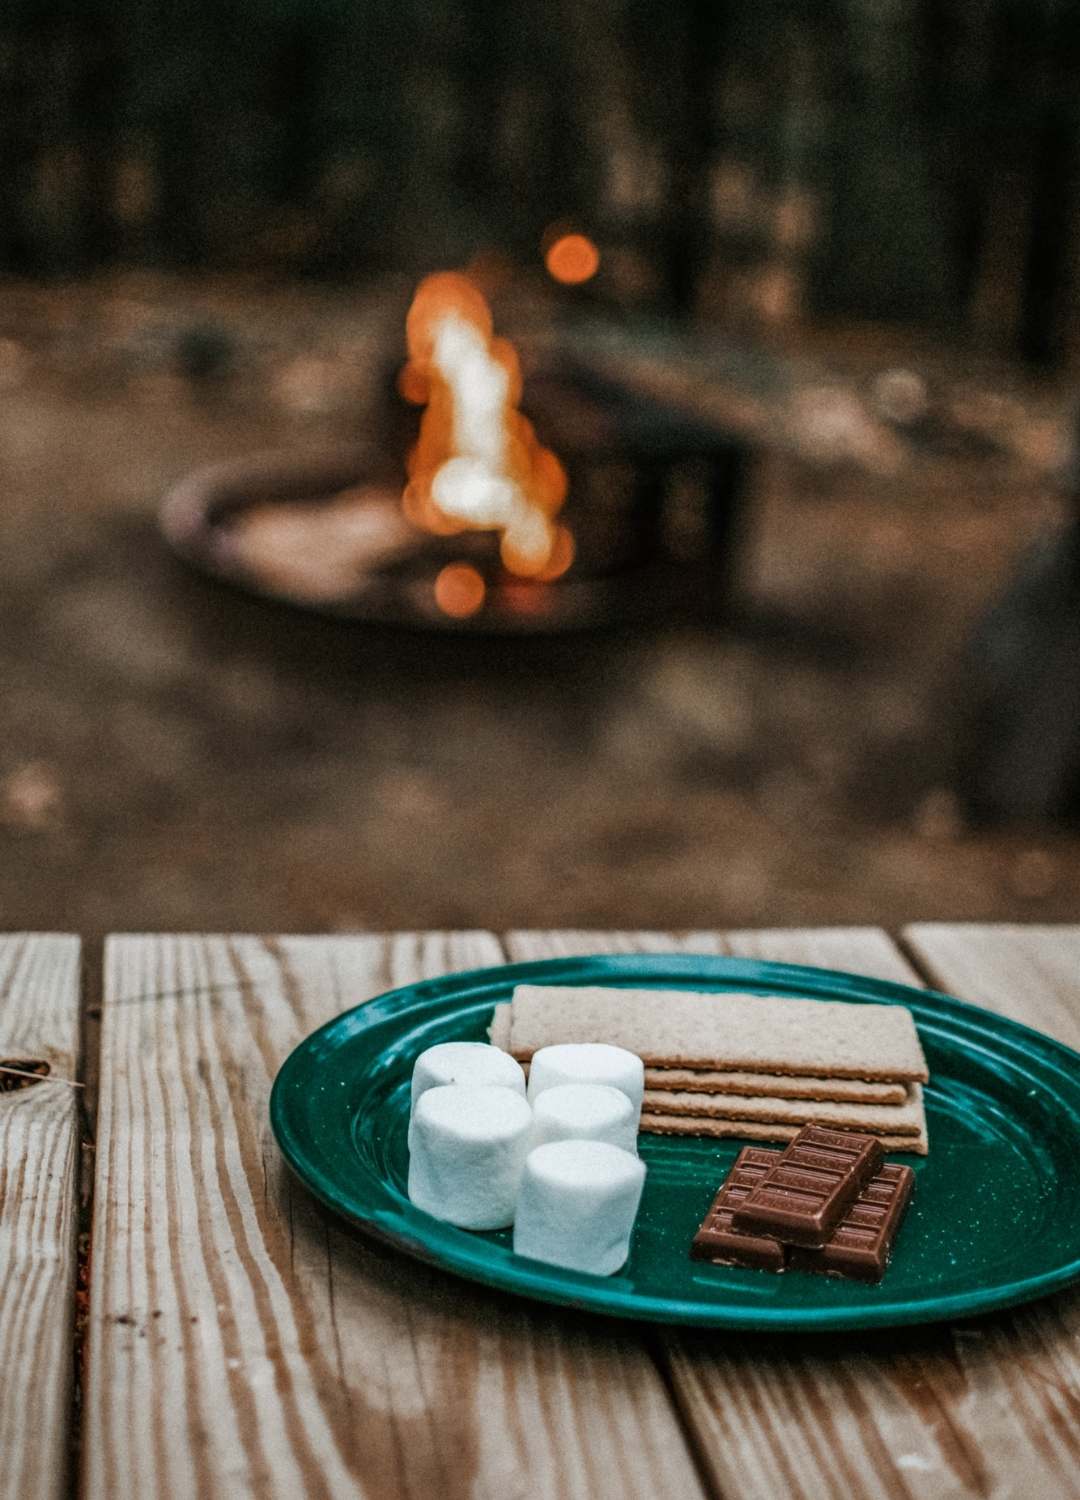 Campfire and smores